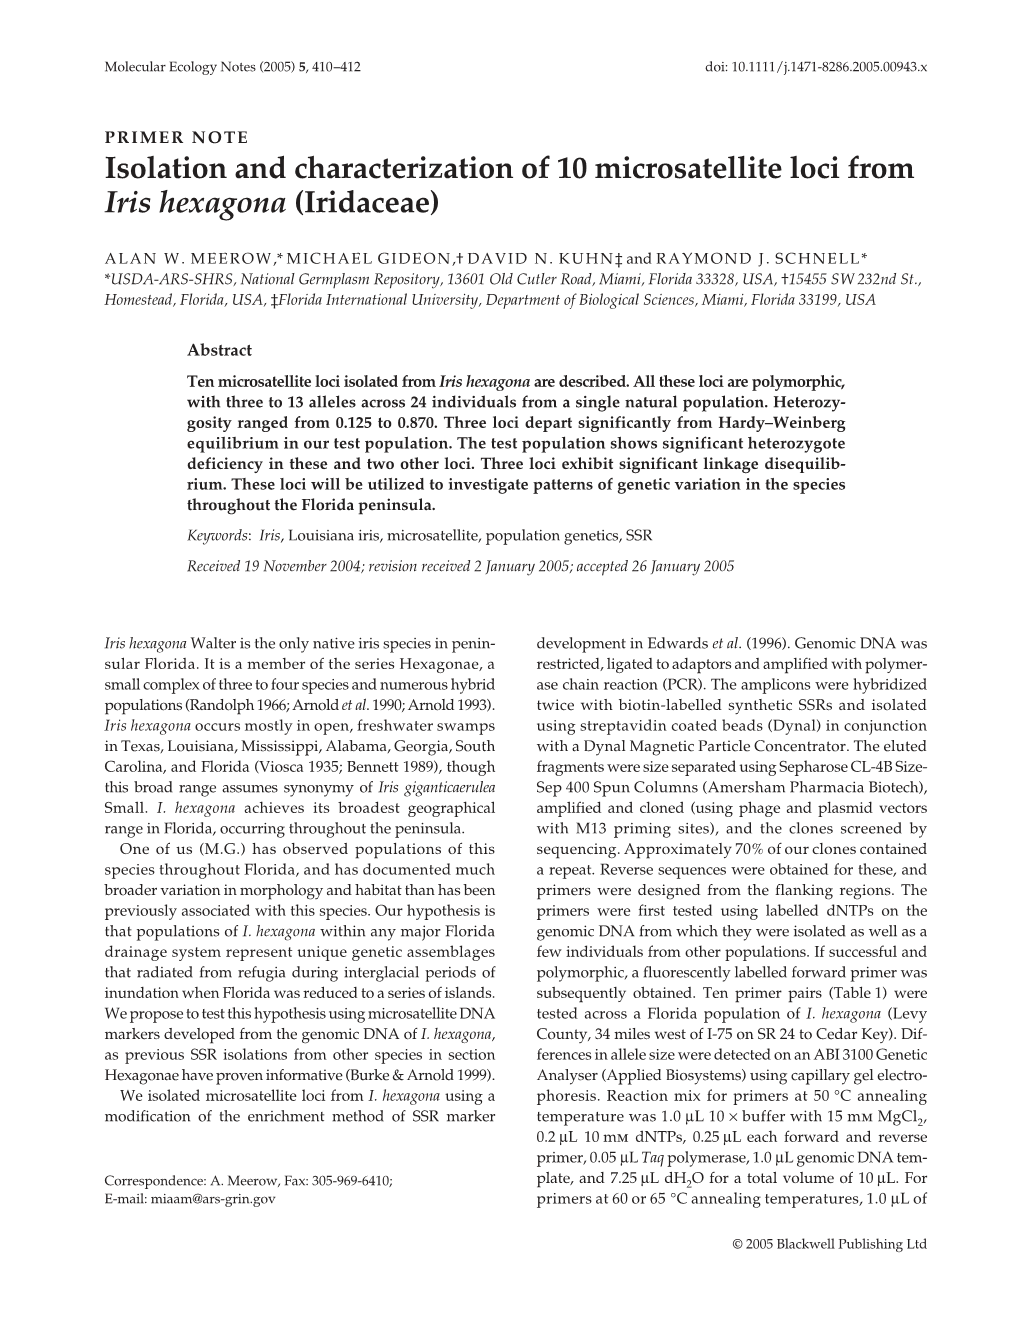 Isolation and Characterization of 10 Microsatellite Loci from Iris Hexagona (Iridaceae)